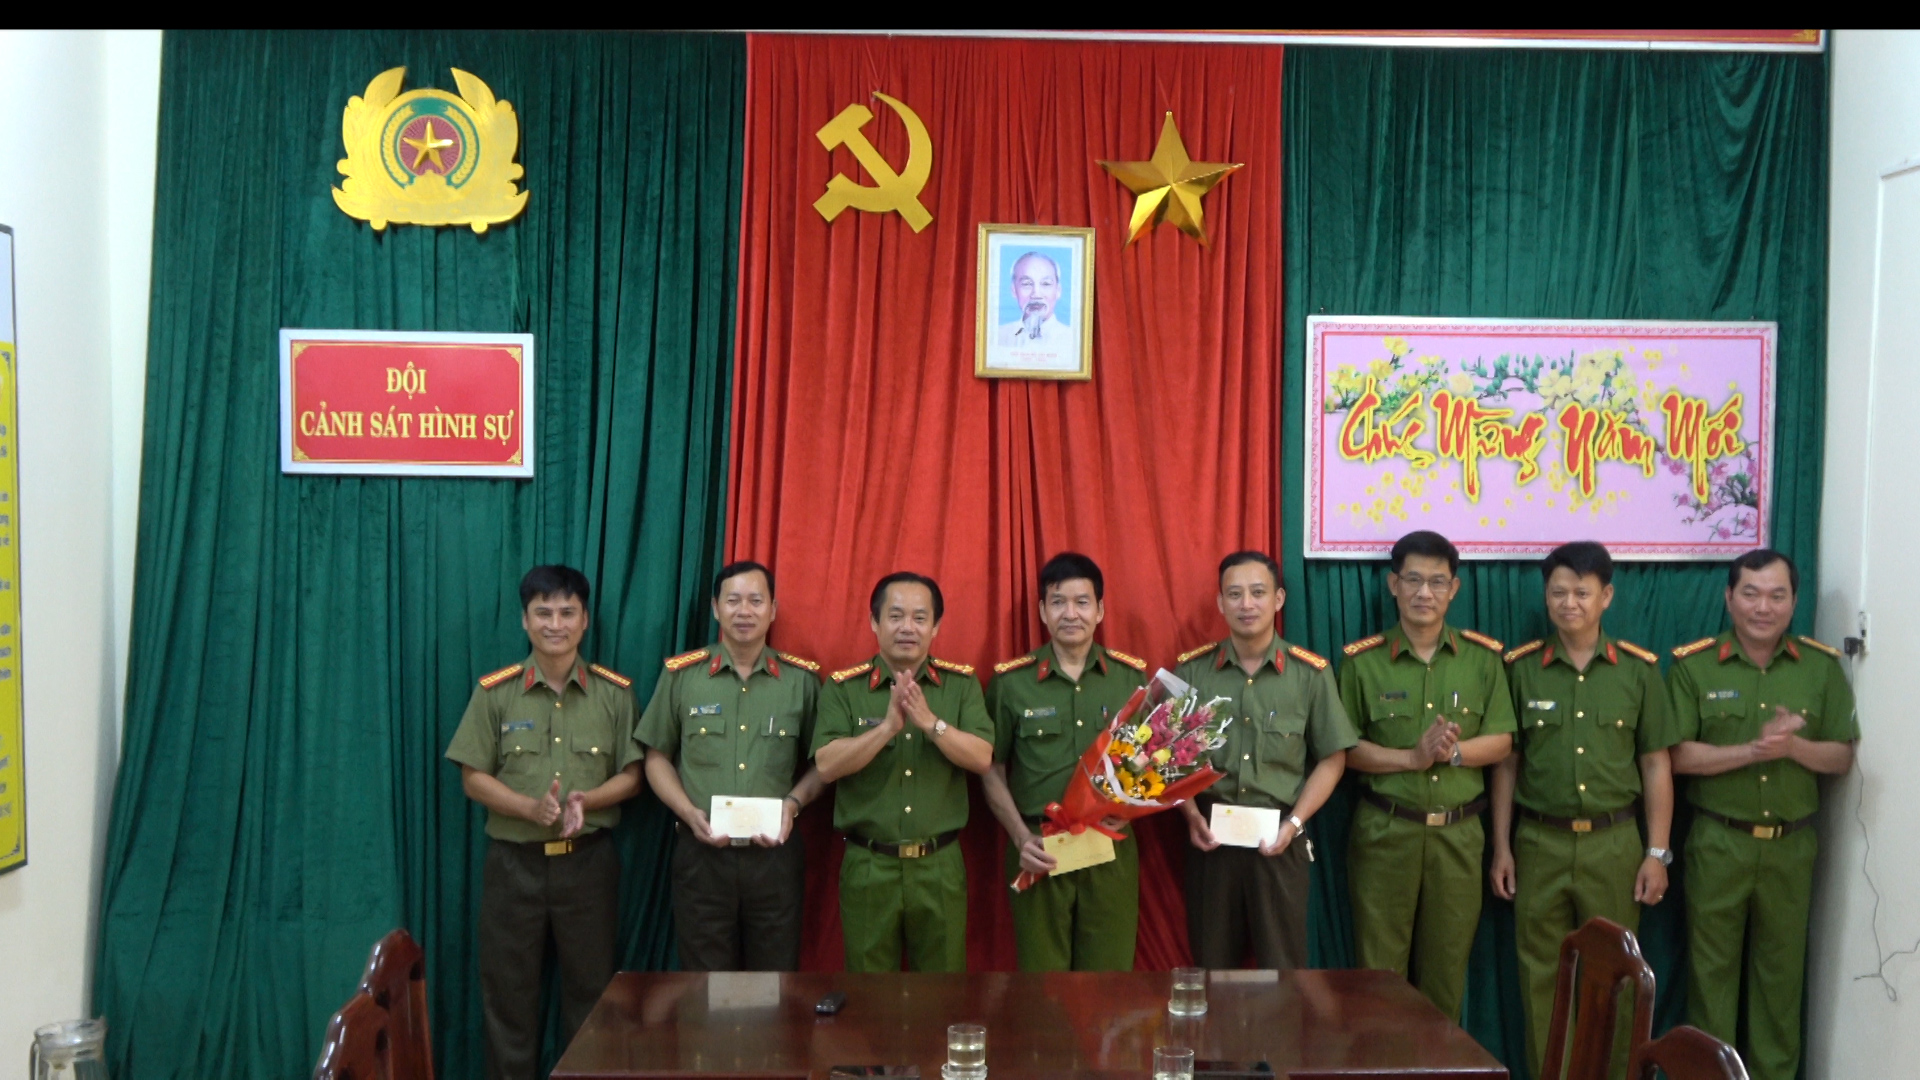 Ban Giám đốc Công an tỉnh Thừa Thiên - Huế đã biểu dương và trao thưởng cho Đội Cảnh sát điều tra tội phạm về trật tự xã hội – Công an thành phố Huế.